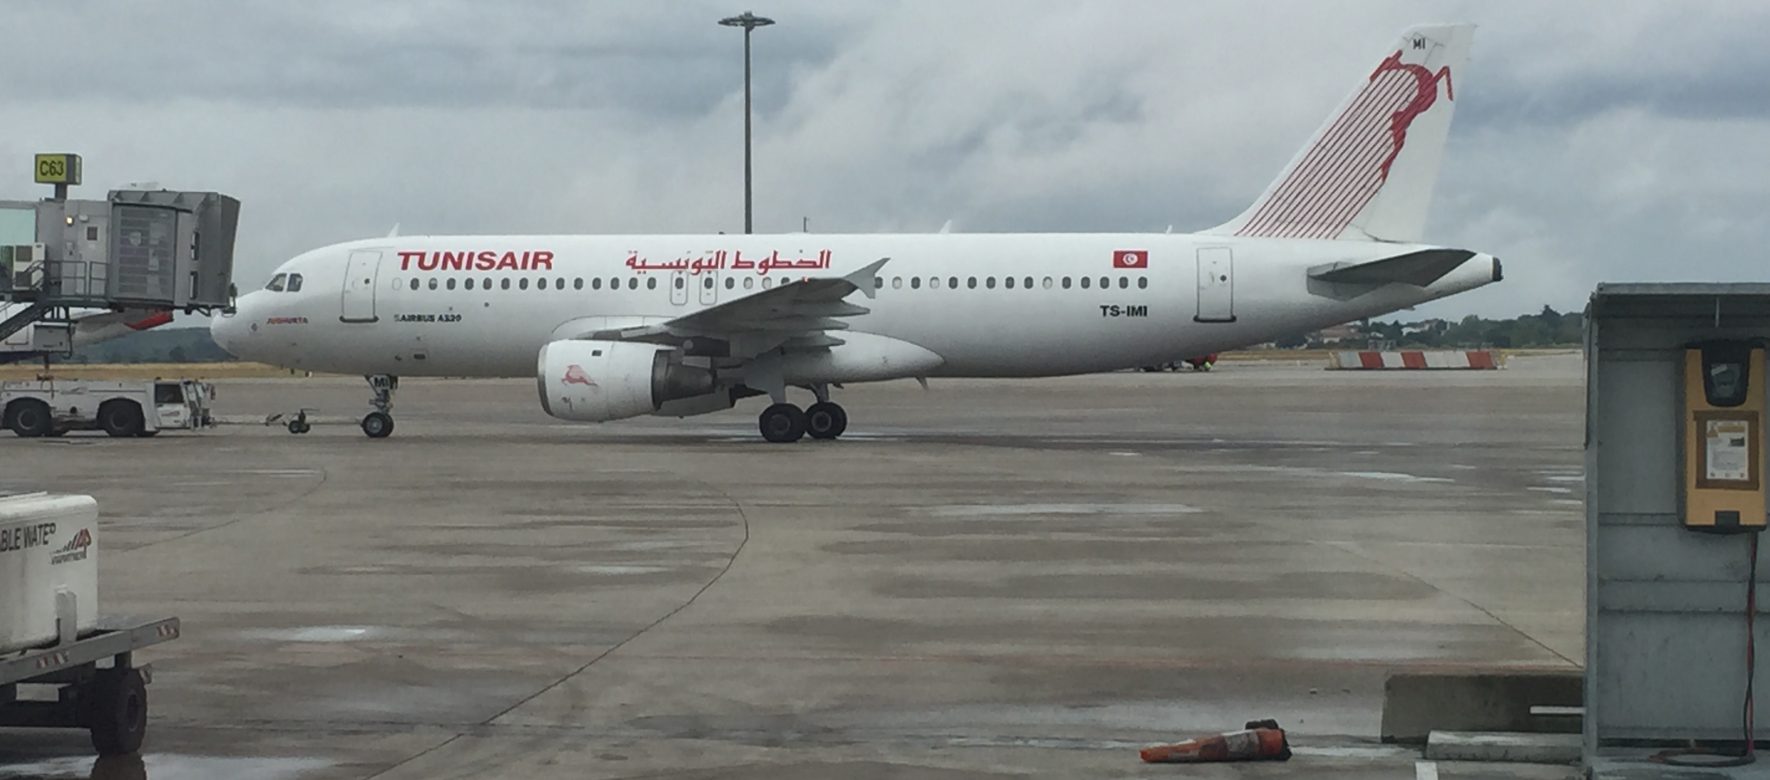 Tunisair compte desservir 8 nouvelles destinations africaines, d’ici 2020